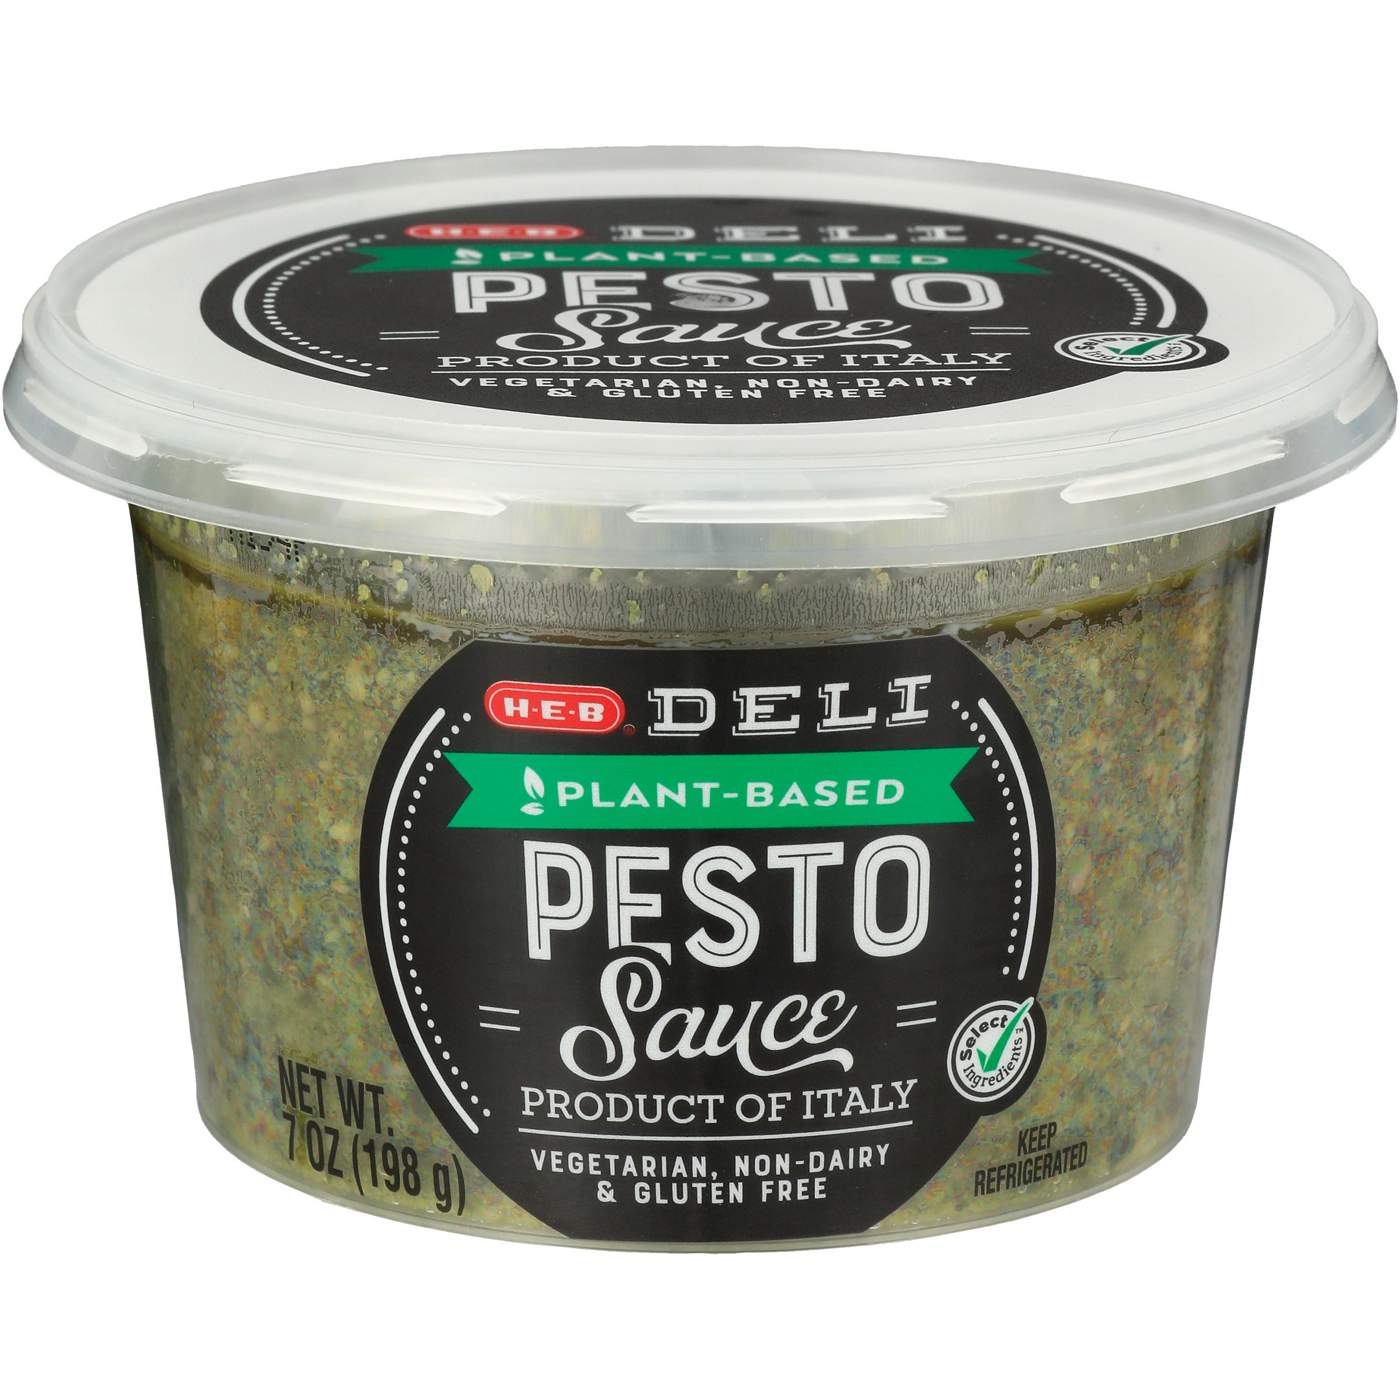 H-E-B Deli Plant Based Pesto Sauce; image 1 of 2